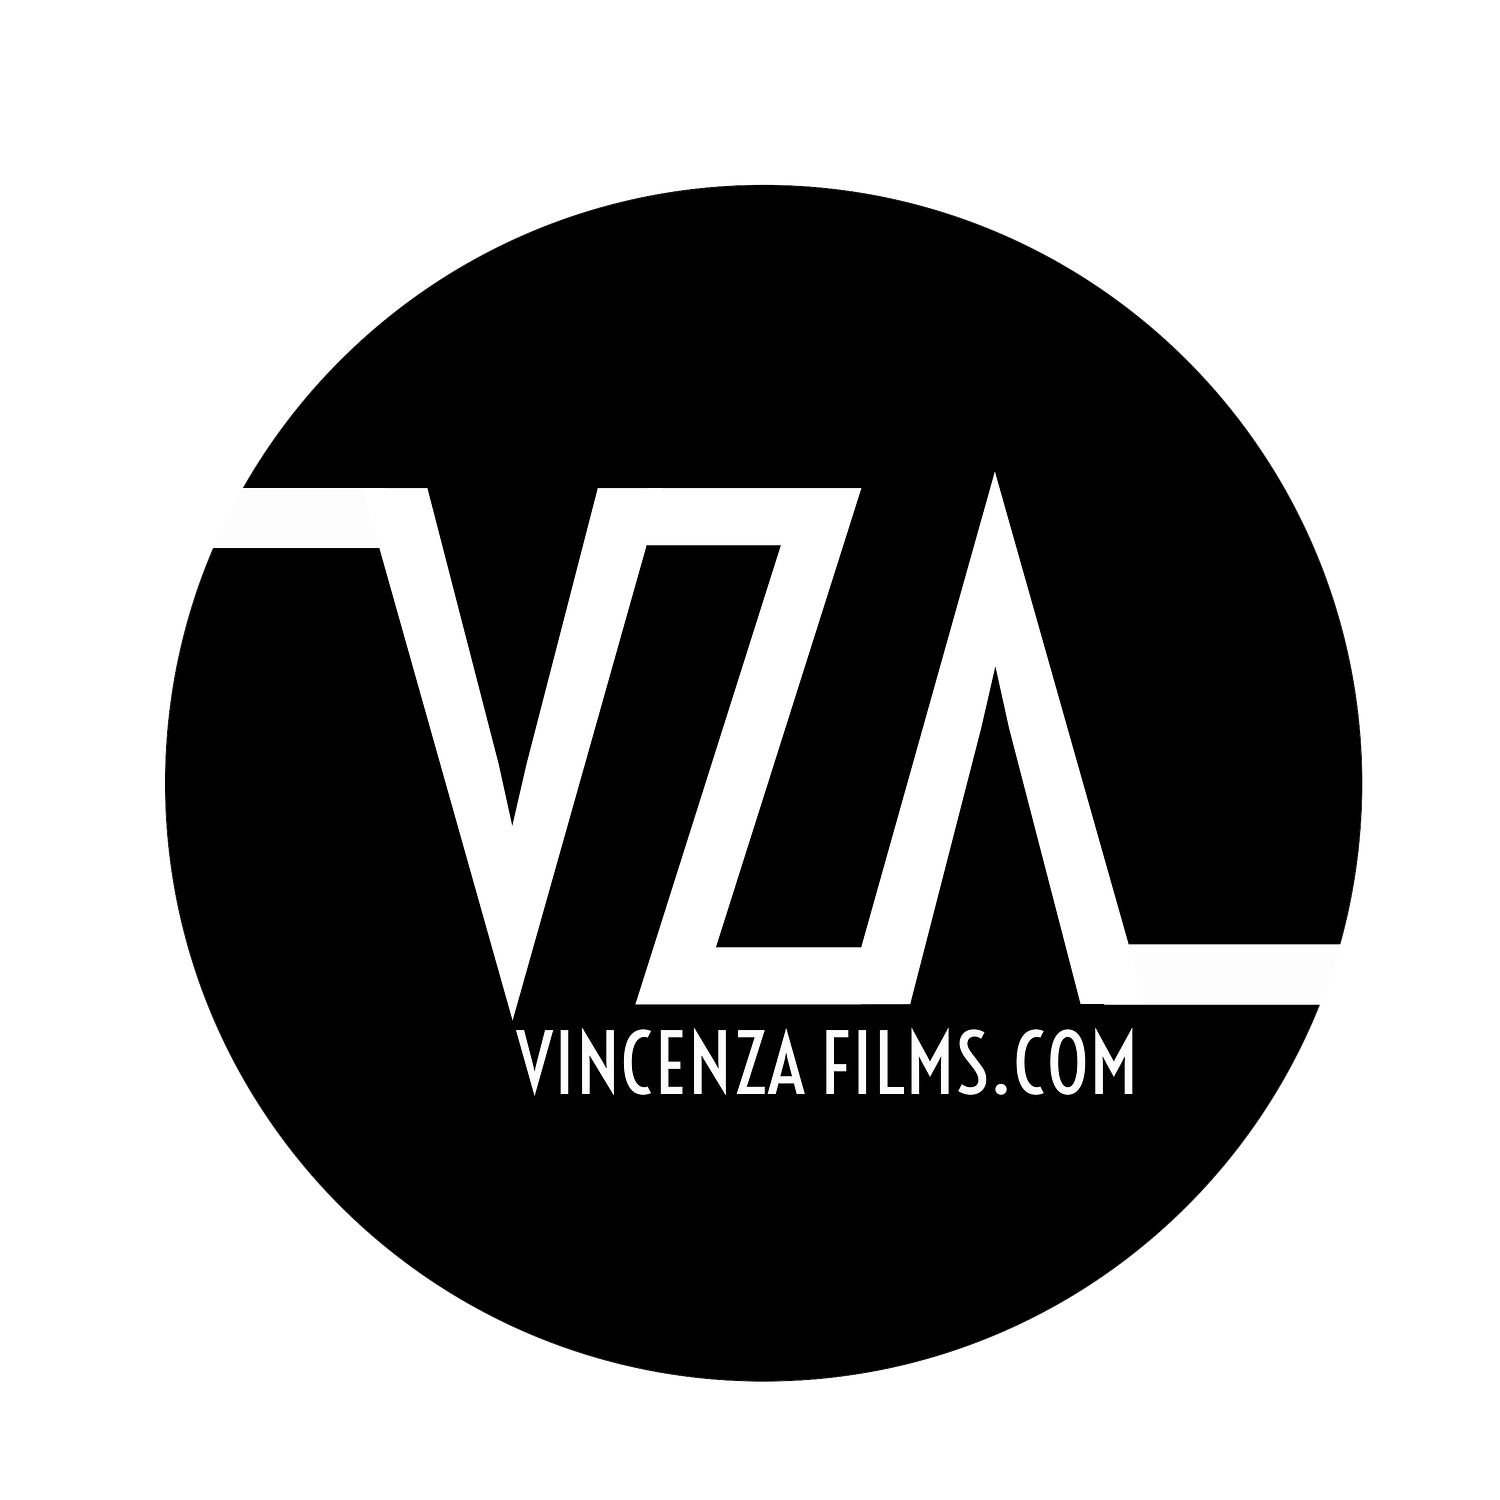 Vincenza Films Productions